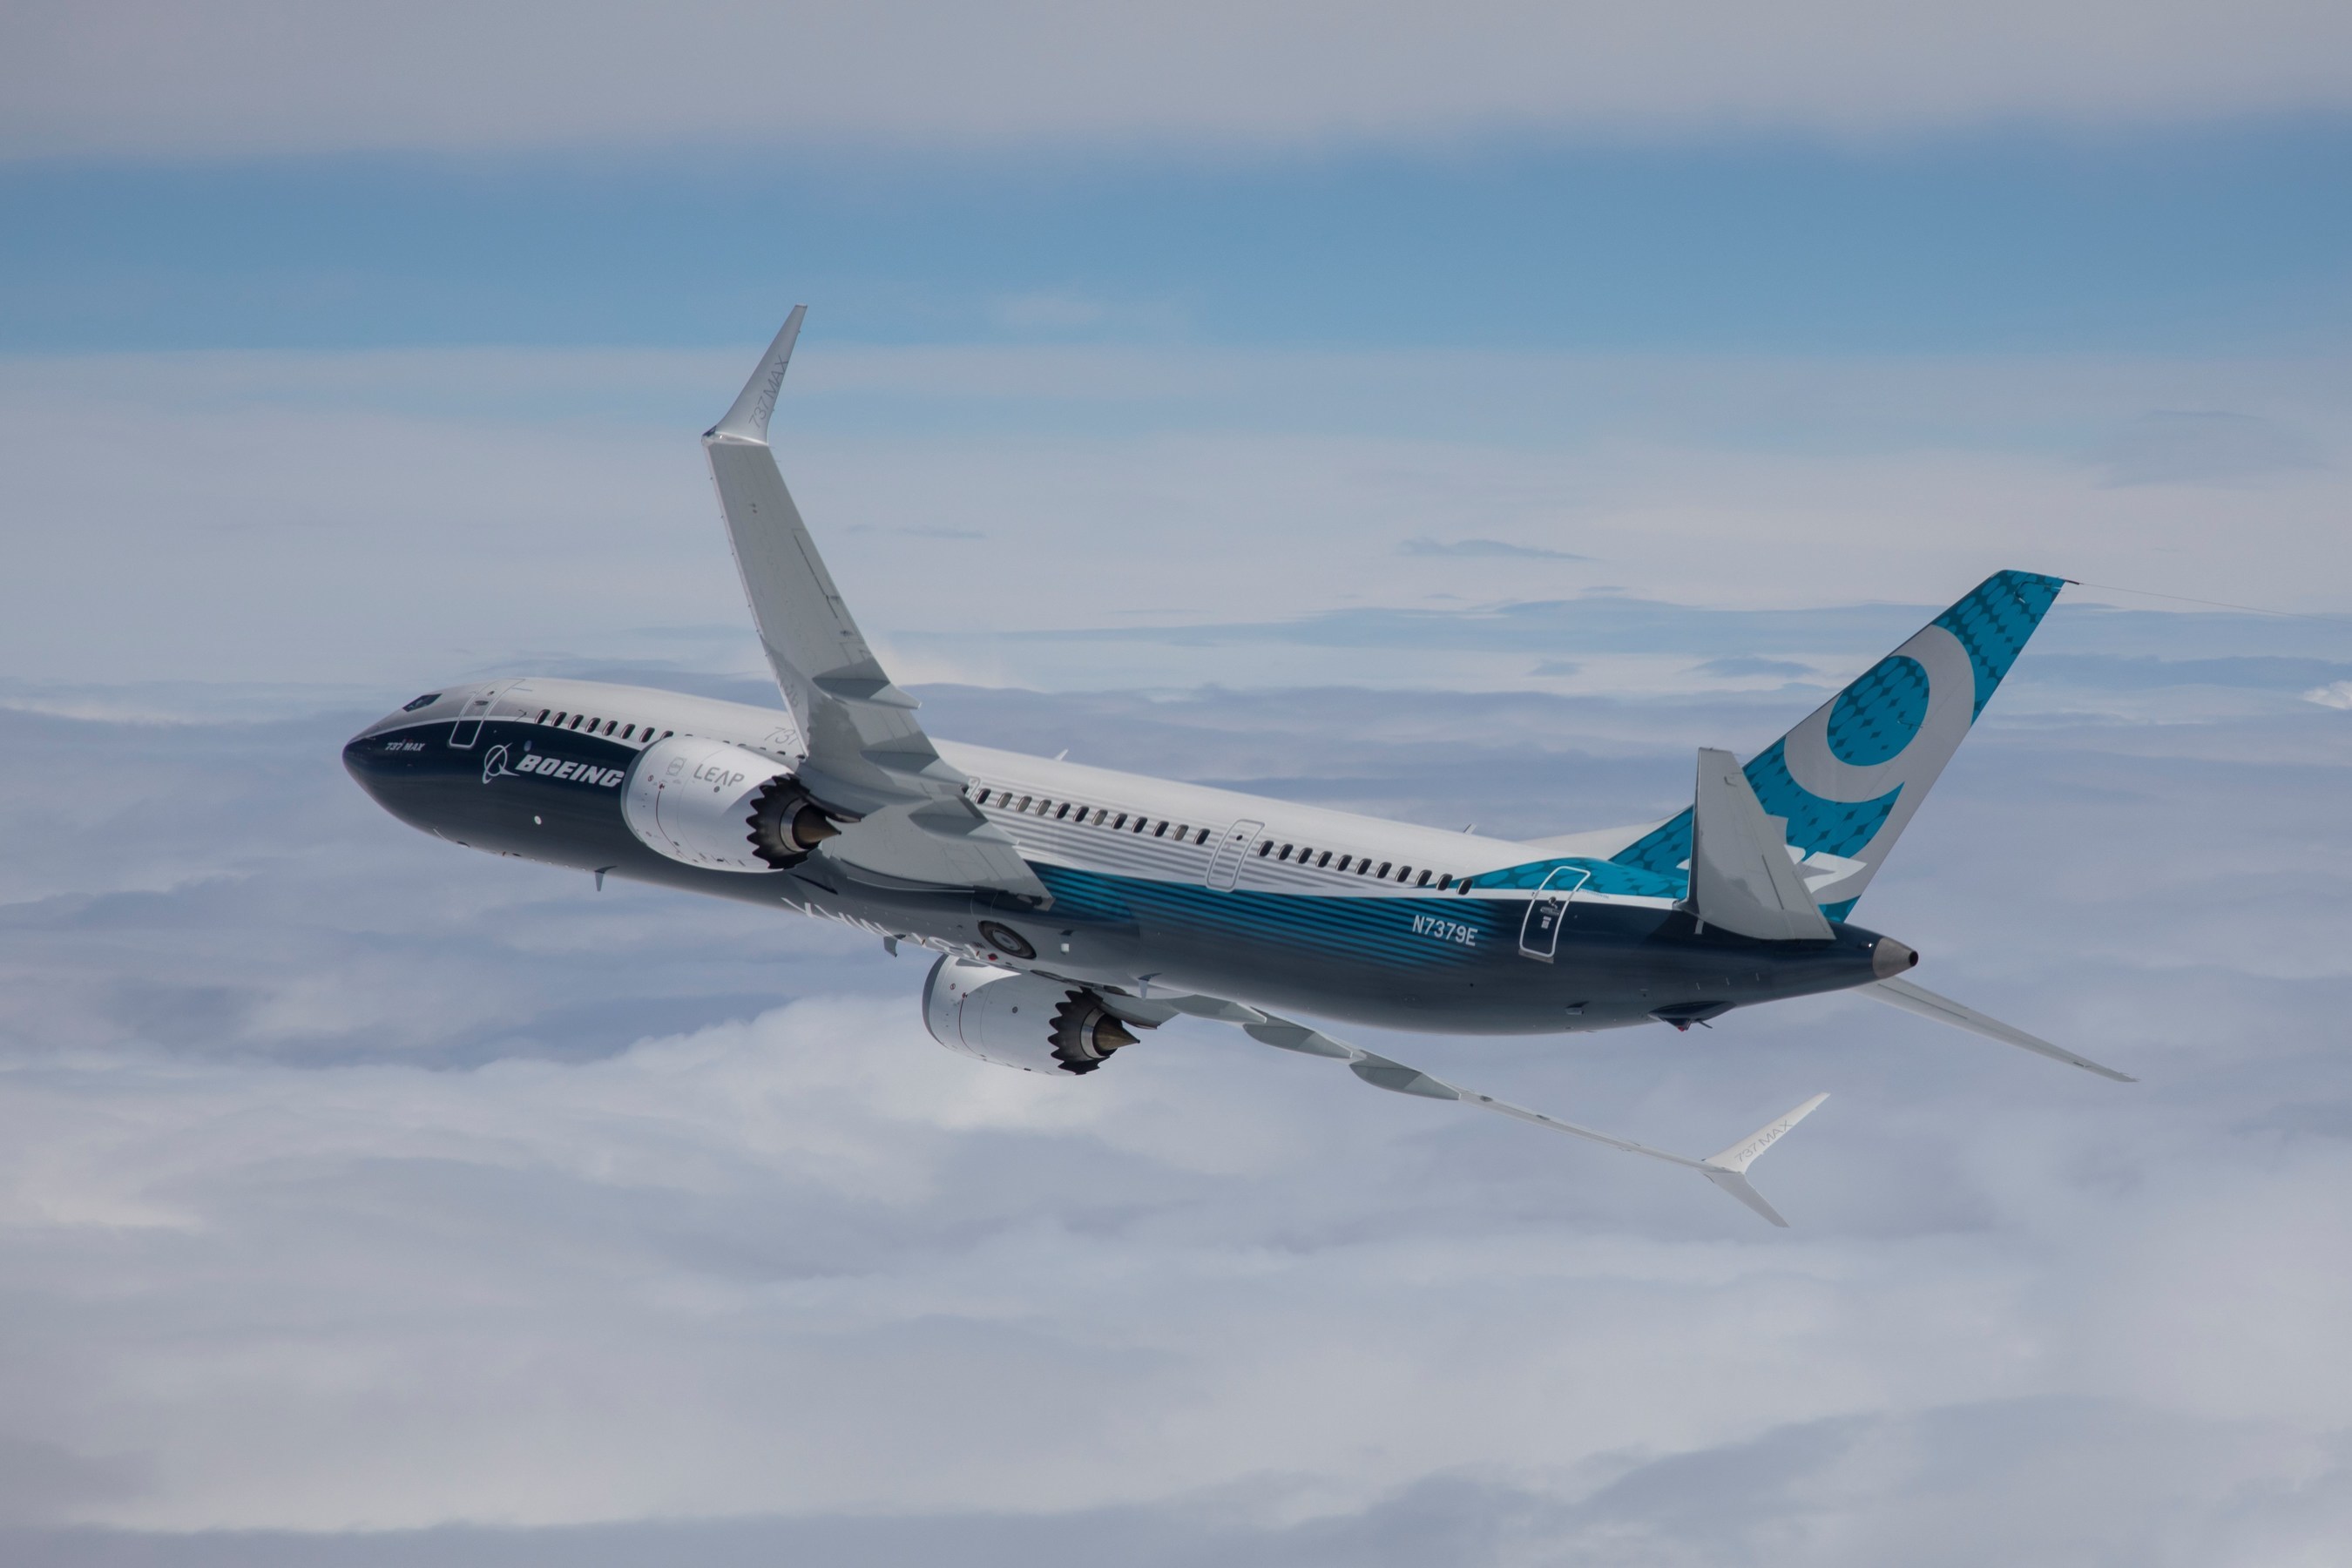 Boeing acquires Spirit AeroSystems in US$4.7 billion deal